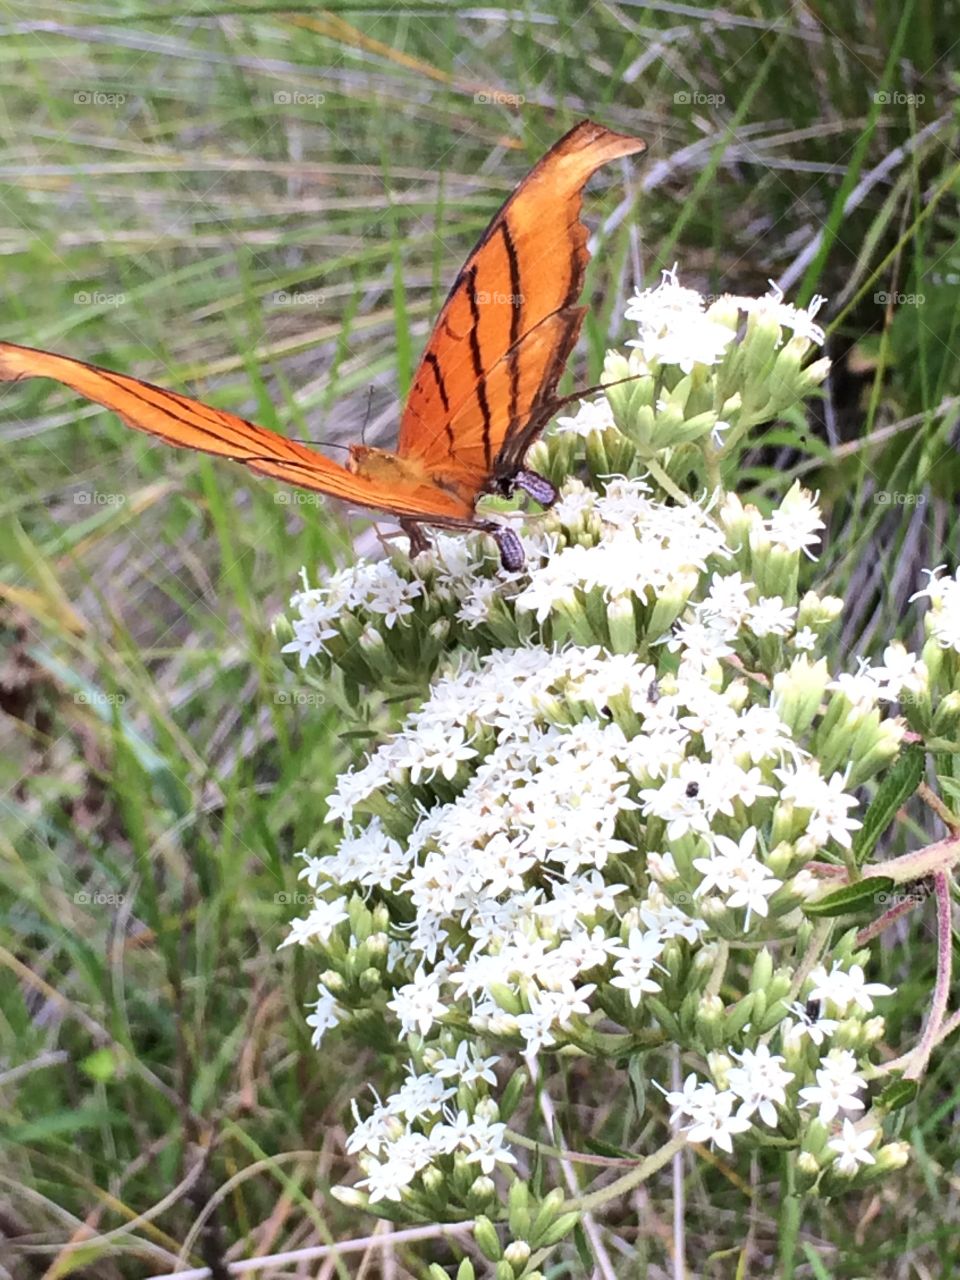 Monarca butterfly